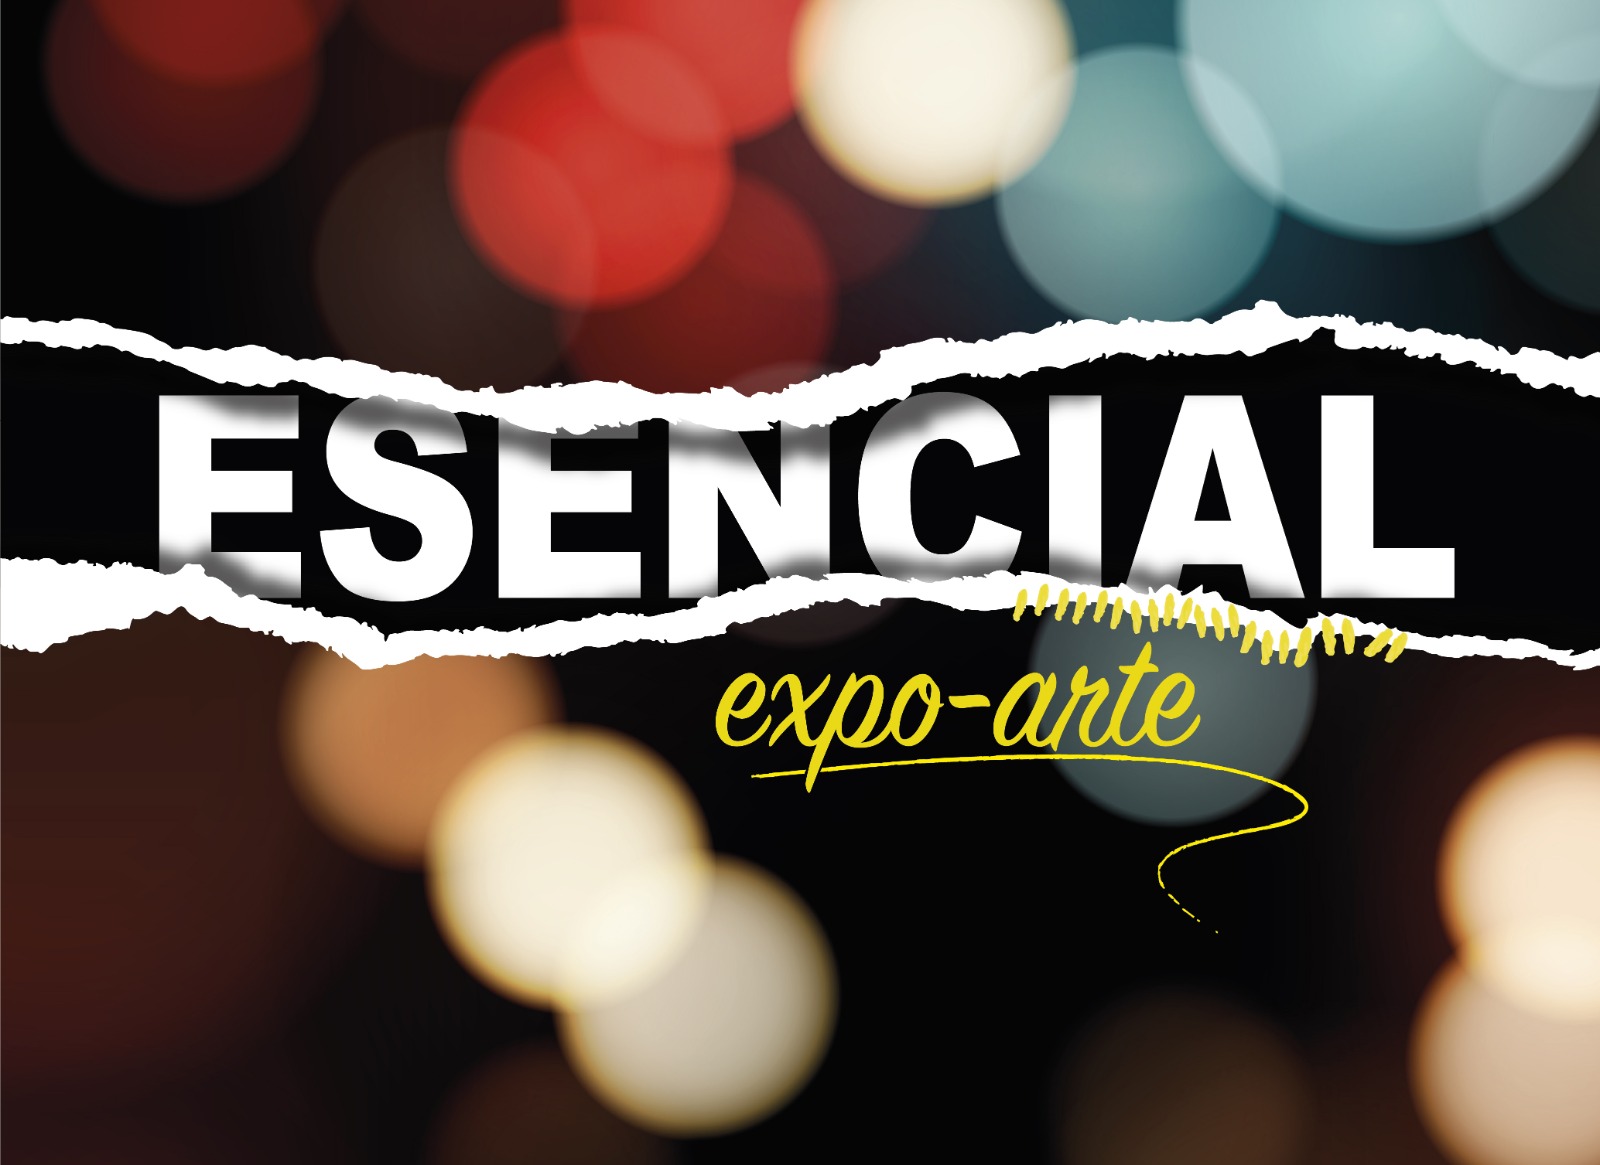 ESENCIAL Expo-Arte. Un homenaje a las personas trabajadoras de todos los servicios esenciales, inspirado en el arte